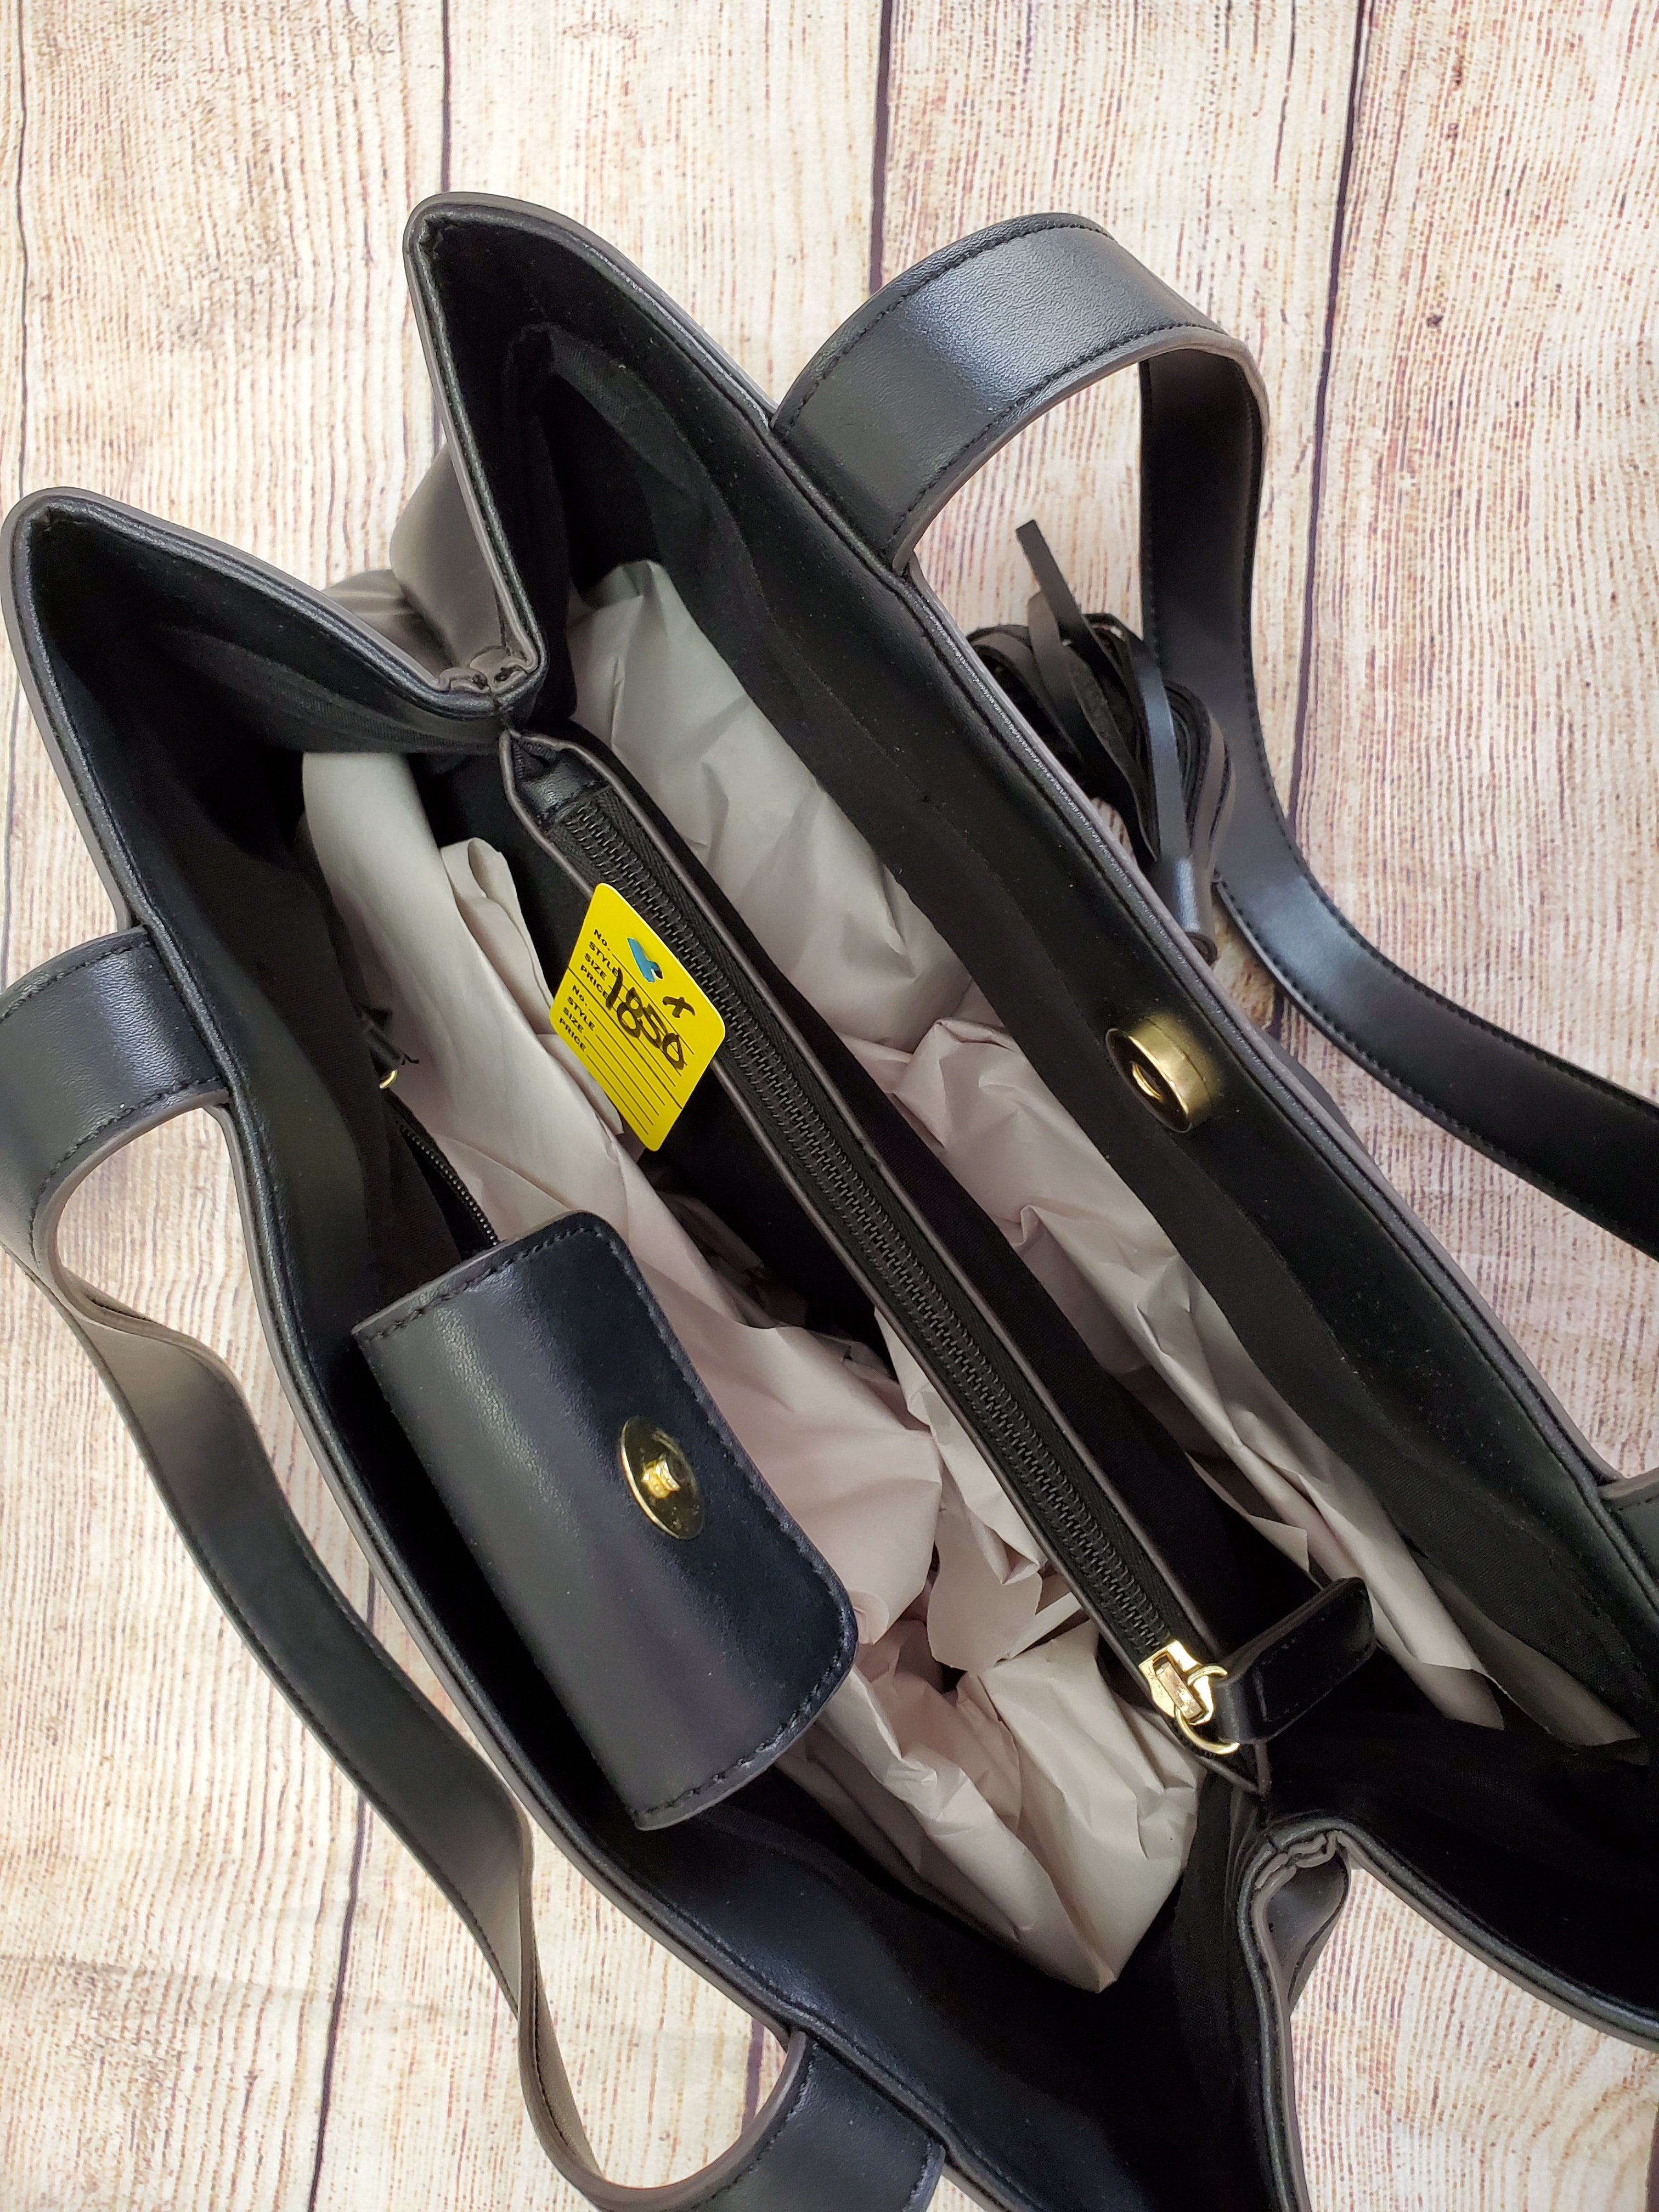 LIZ CLAIBORNE ACCESSORIES Crossbody Shoulder Bag Purse Pebbled Zip Closure  $13.67 - PicClick